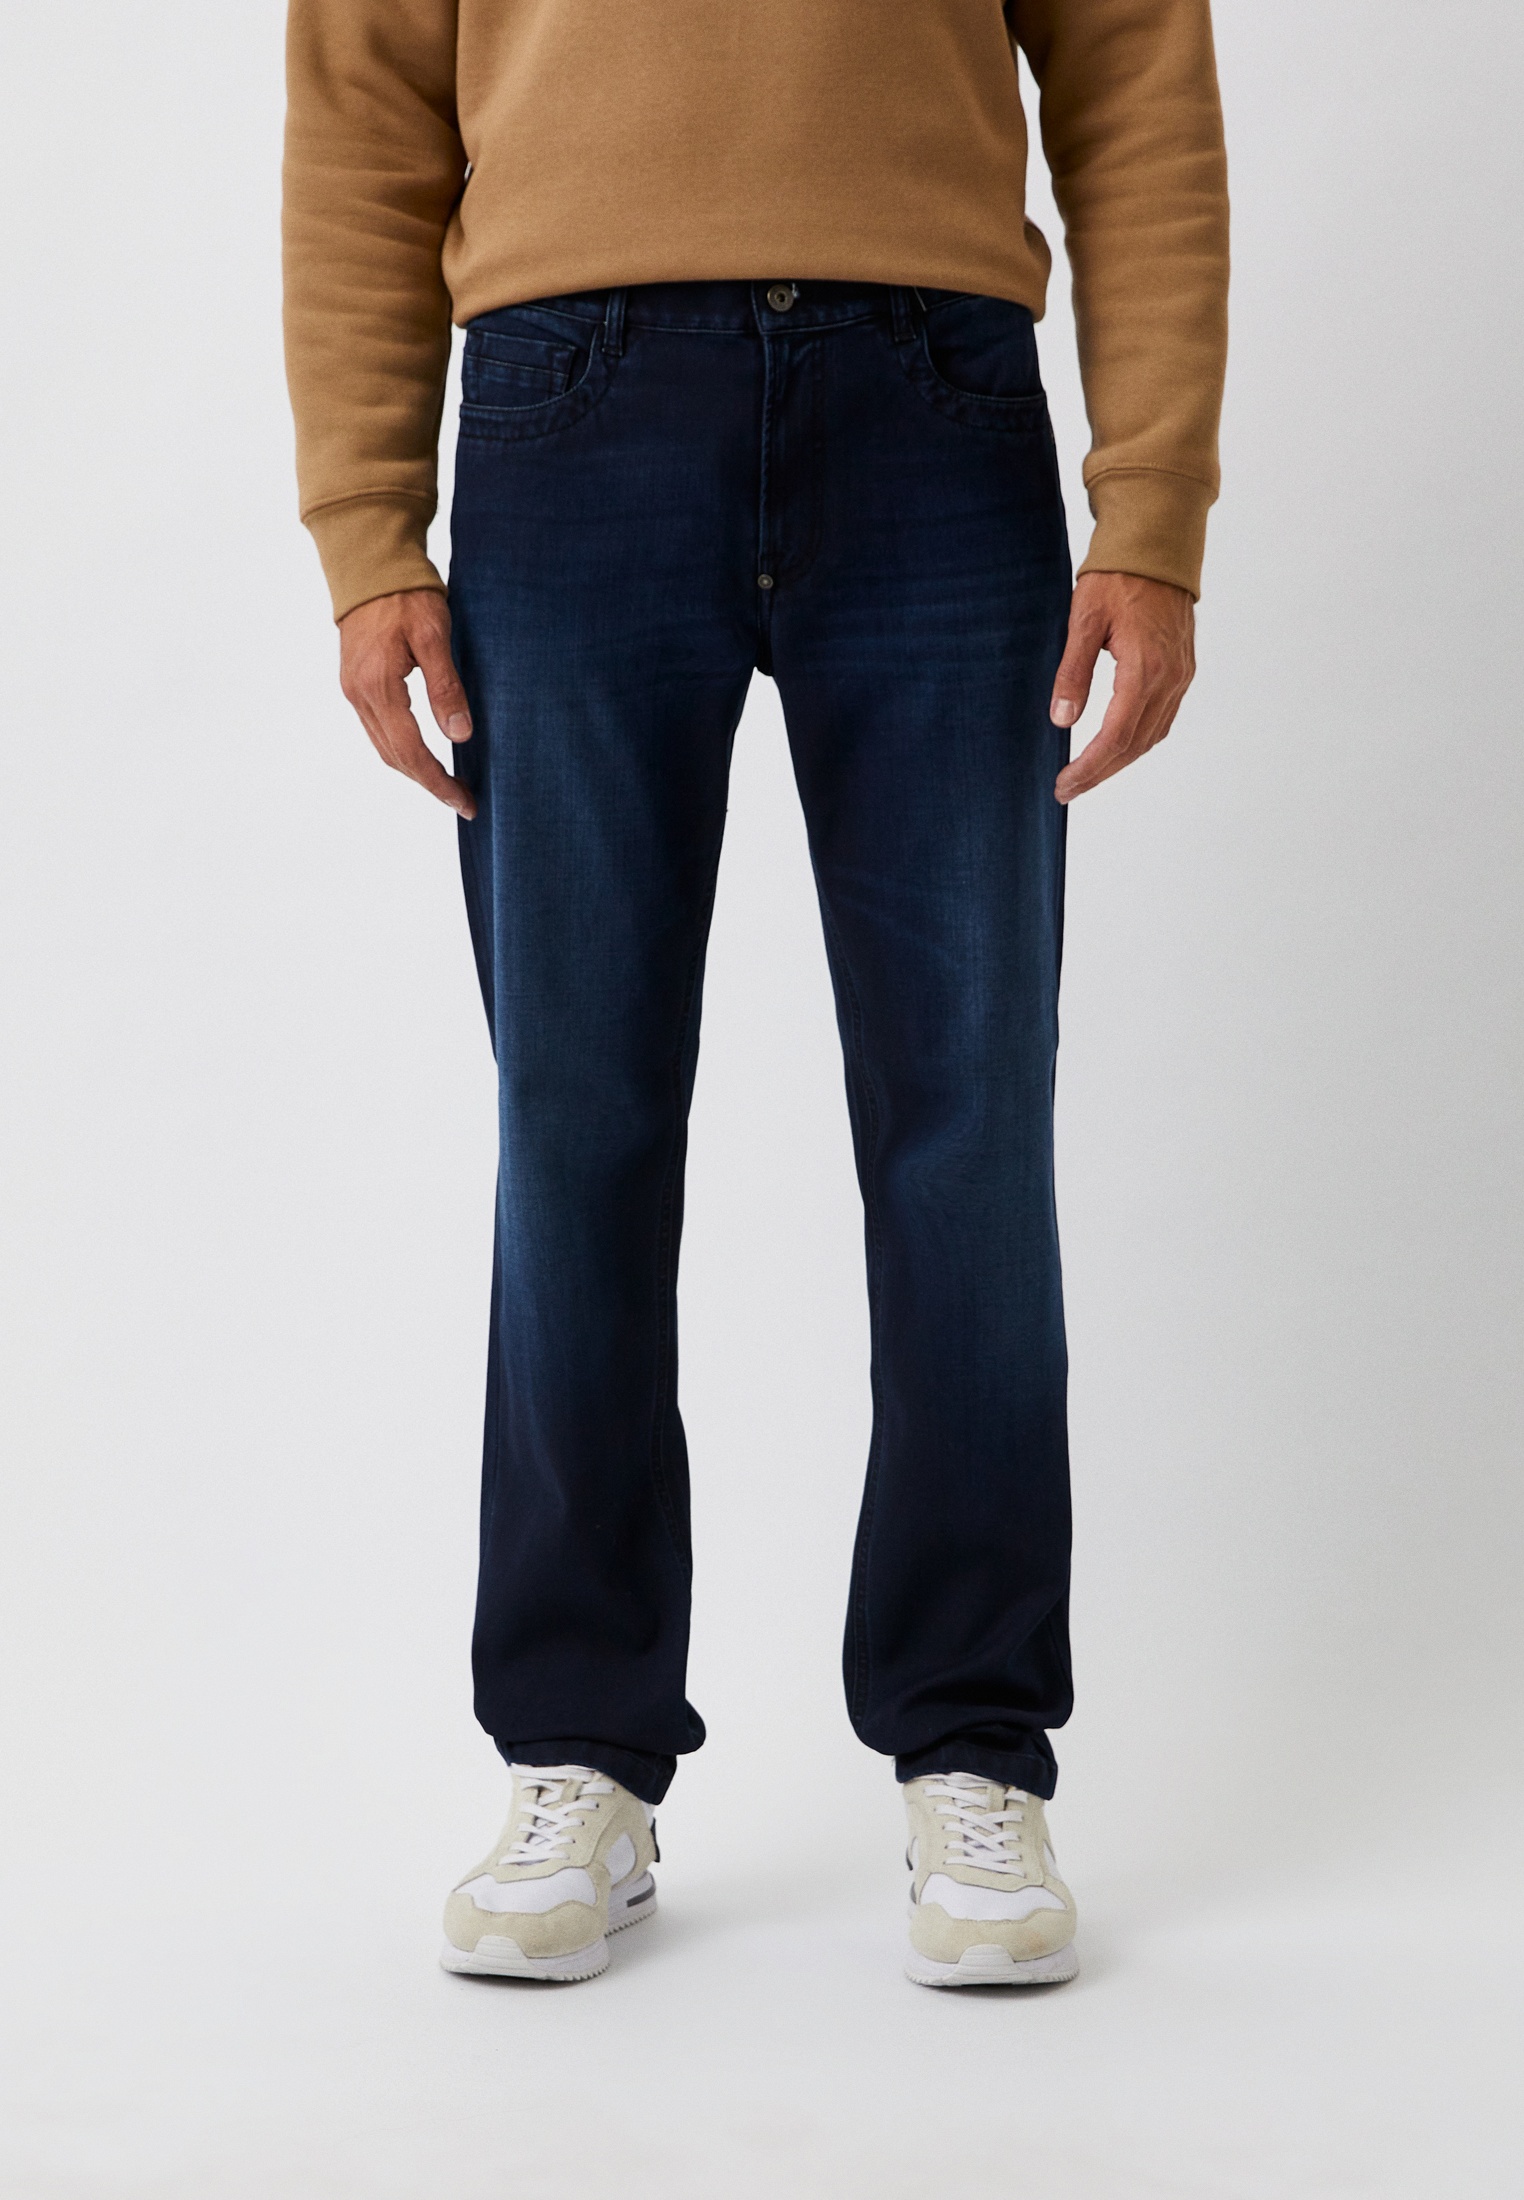 Мужские зауженные джинсы Bikkembergs (Биккембергс) C Q 102 1F S 3854: изображение 5